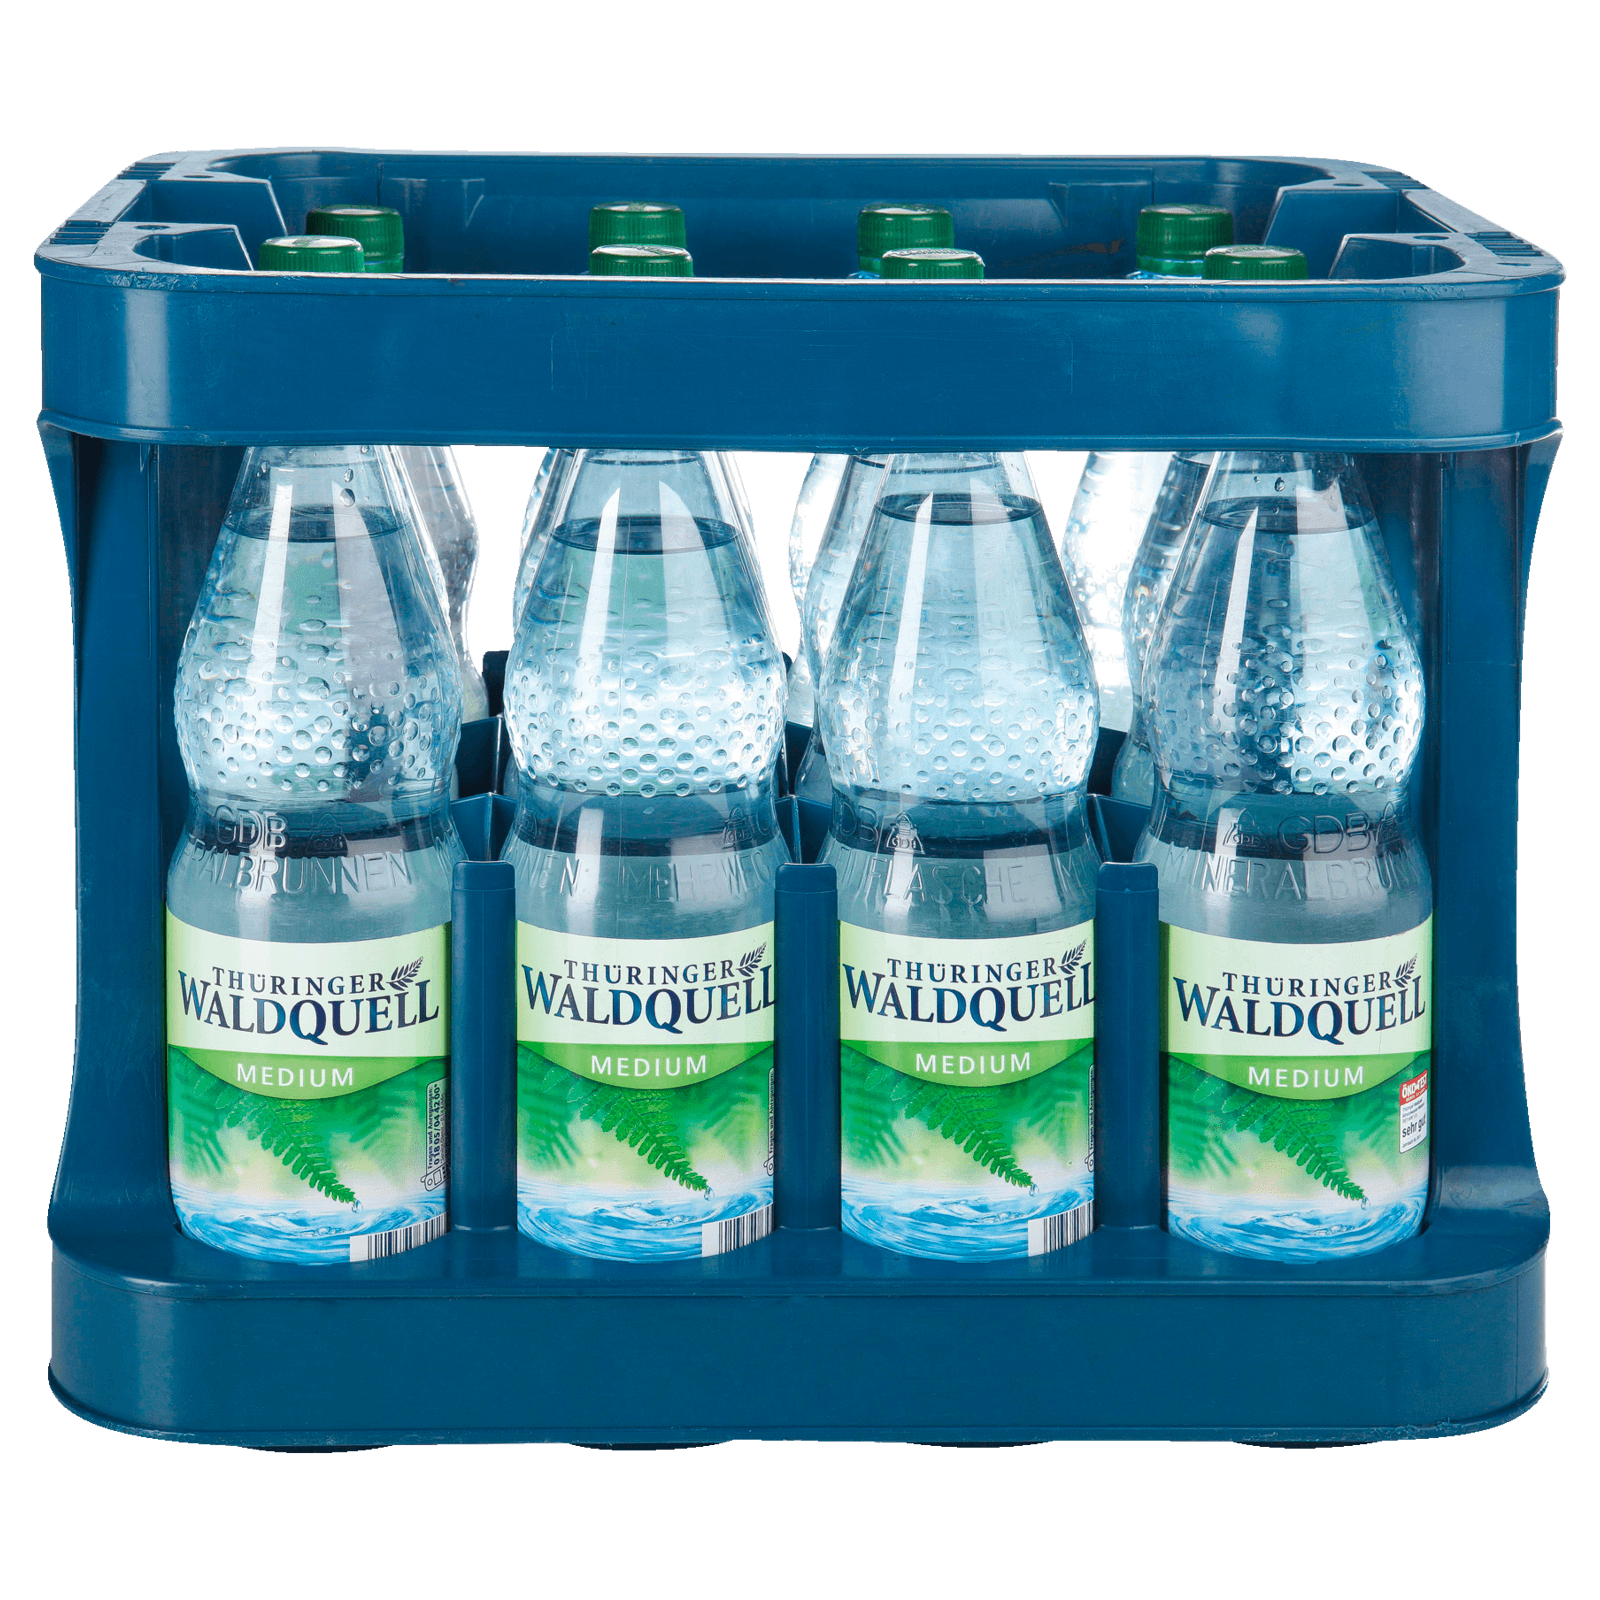 Mineralwasser Medium online kaufen  Große Auswahl - REWE.de - Seite 3